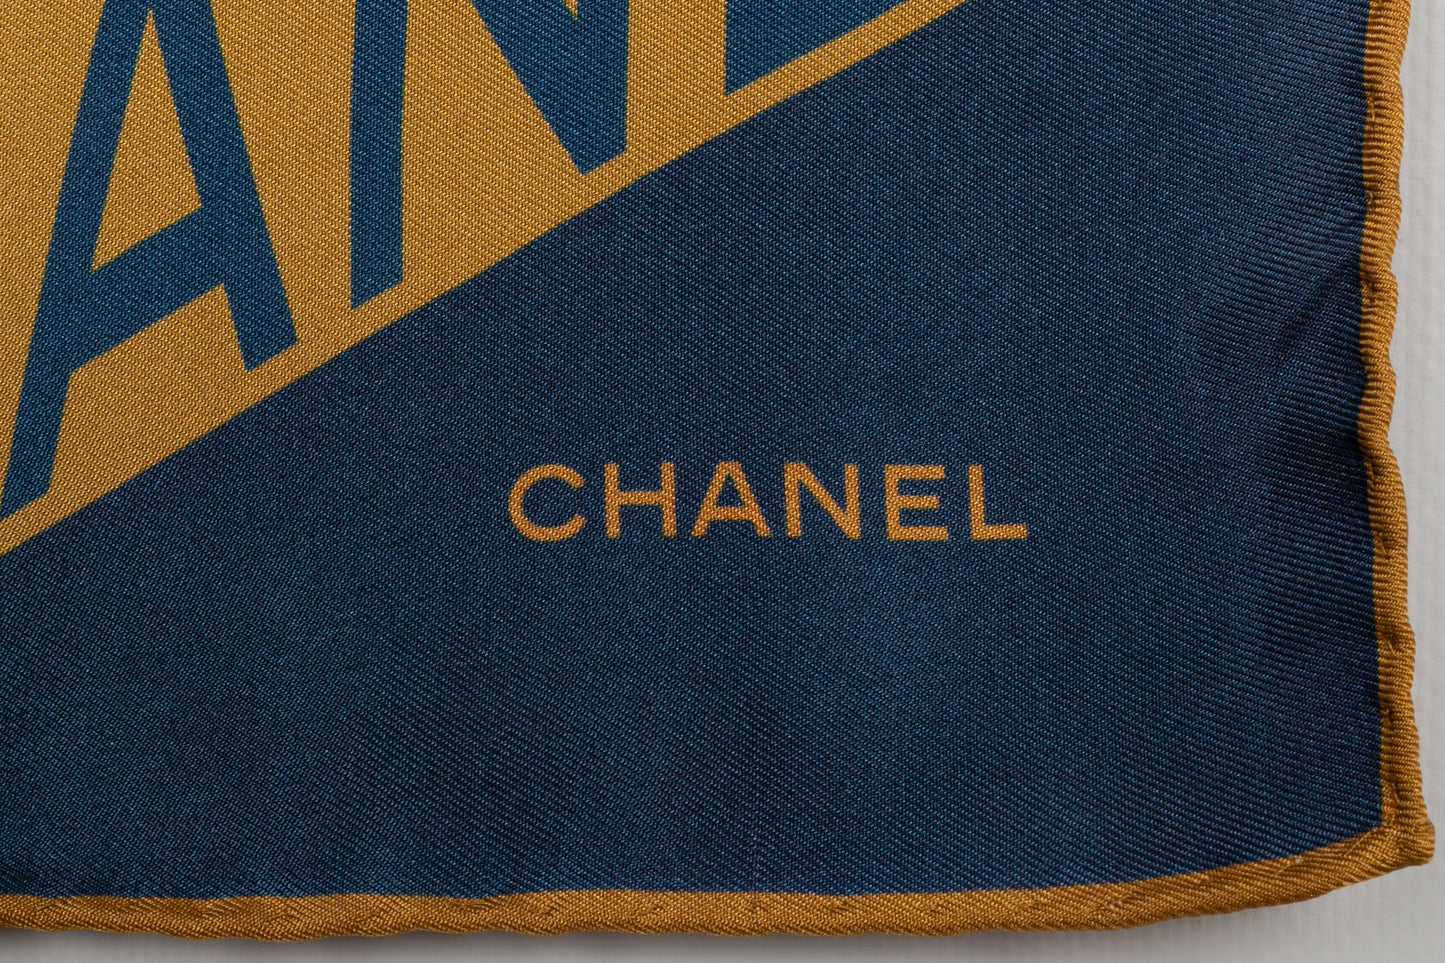 Carré de soie Chanel